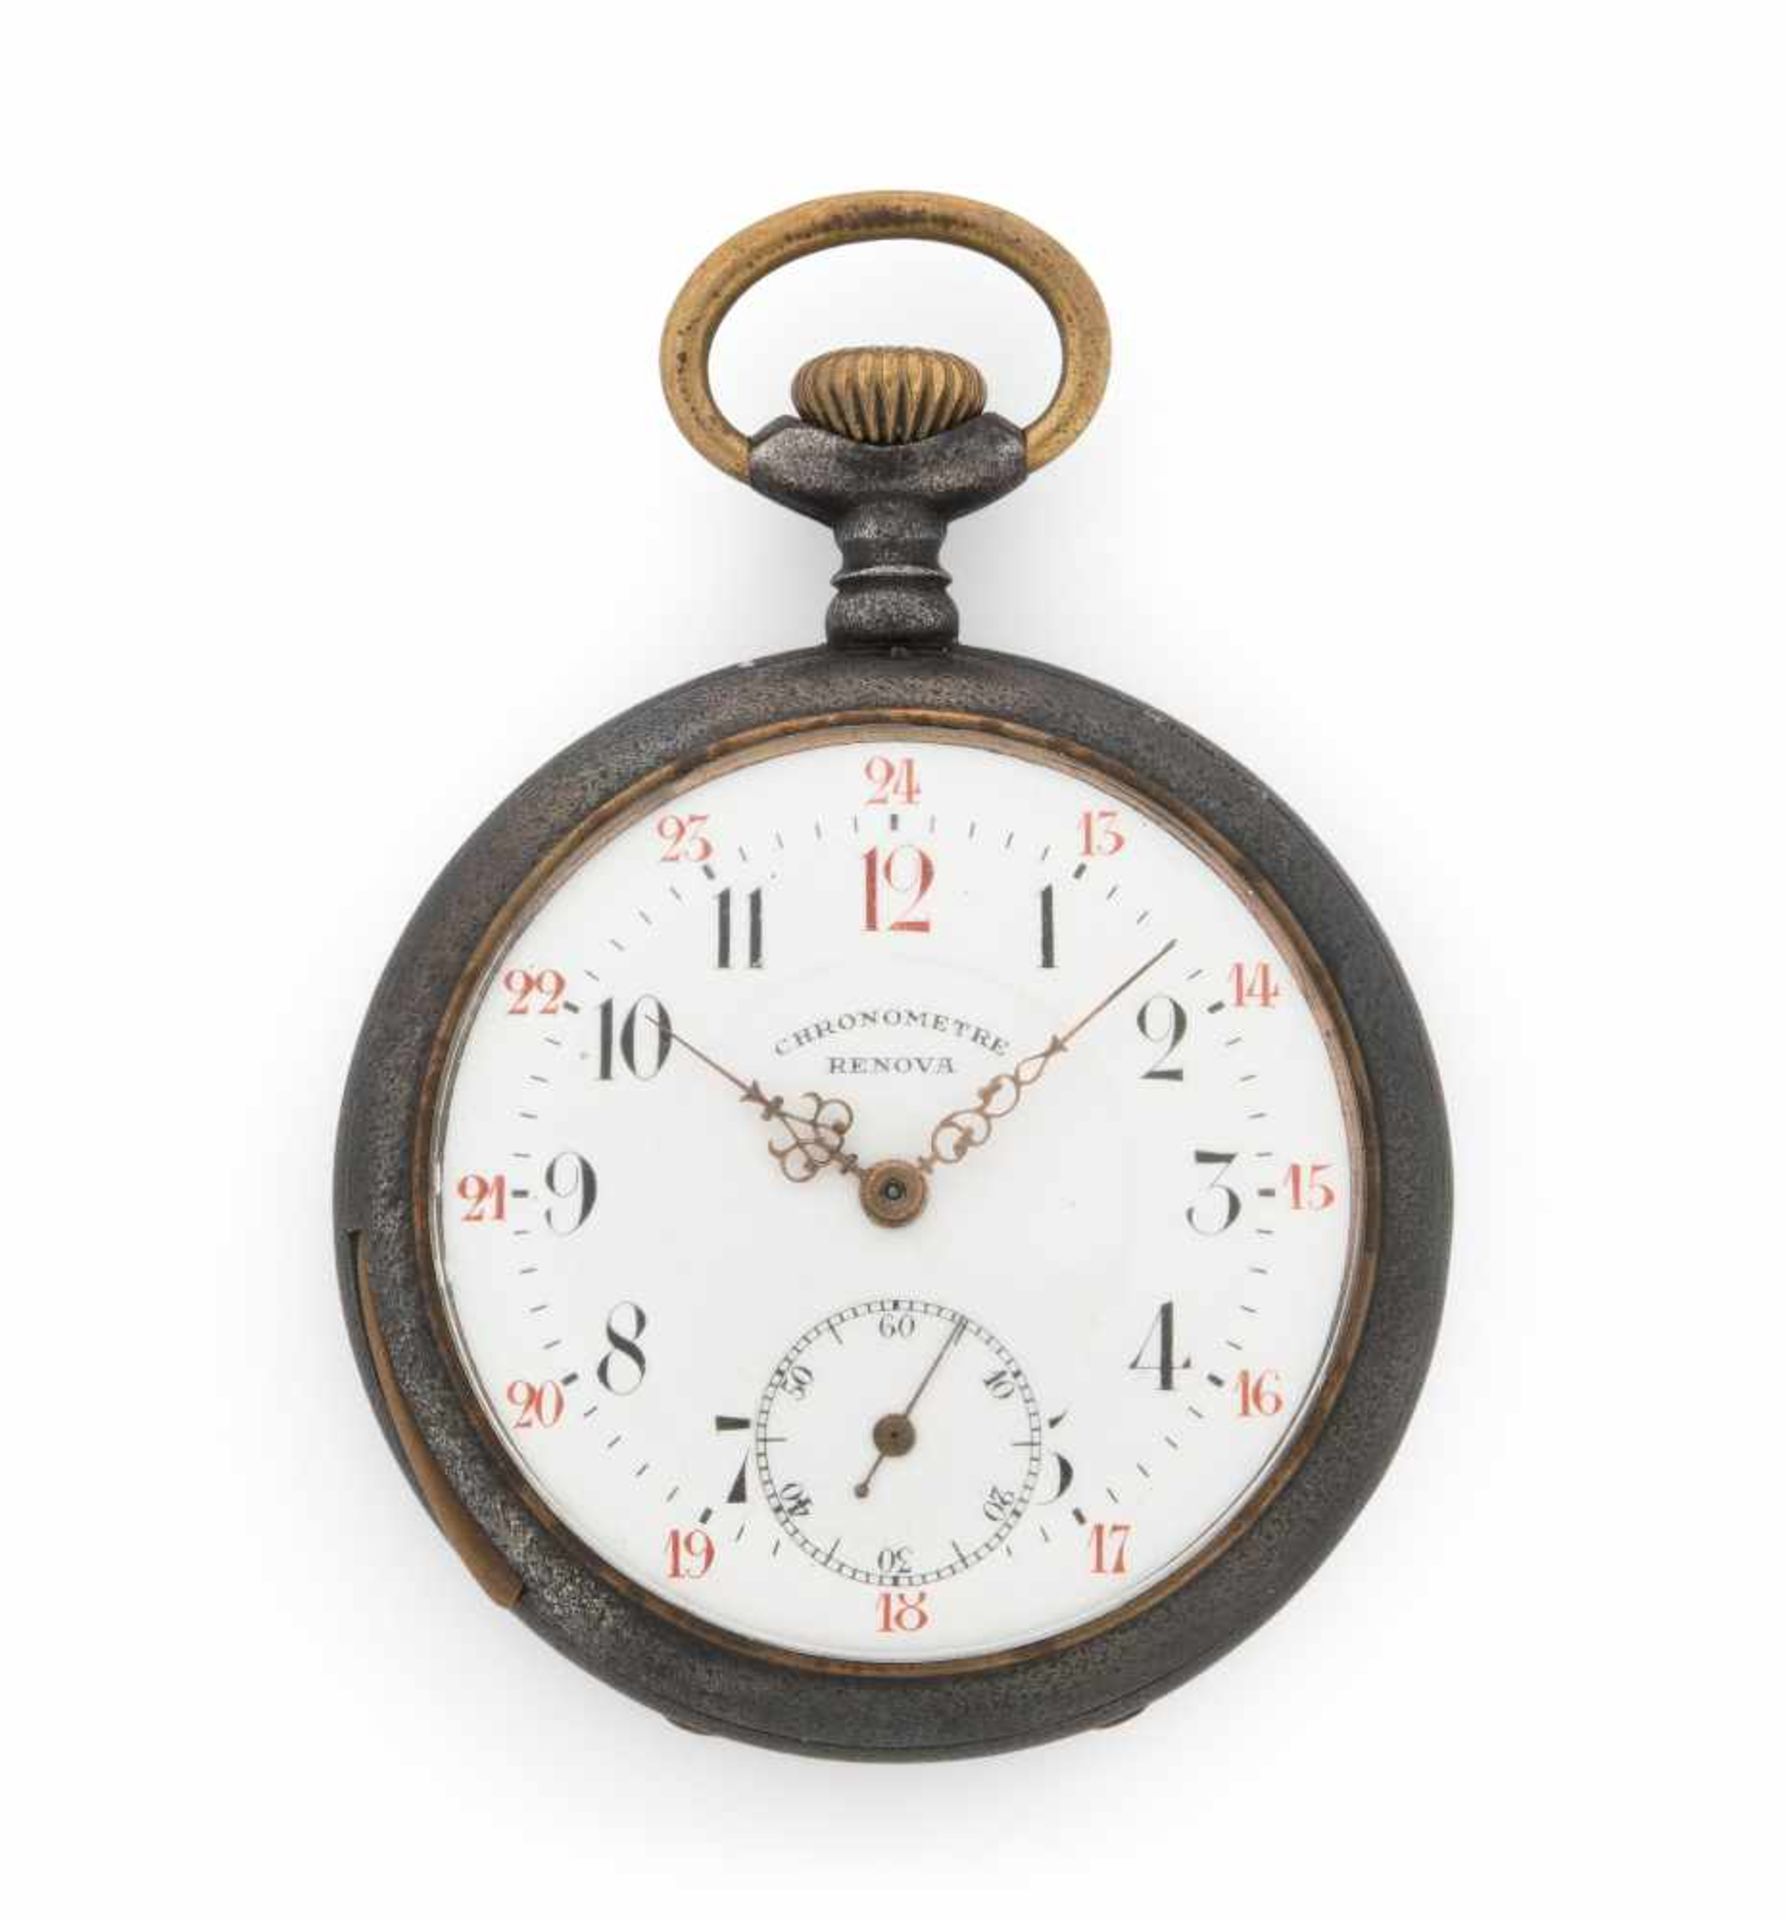 Renova Chronometer Runder, mechanischer Chronometer um 1920 mit Handaufzug und